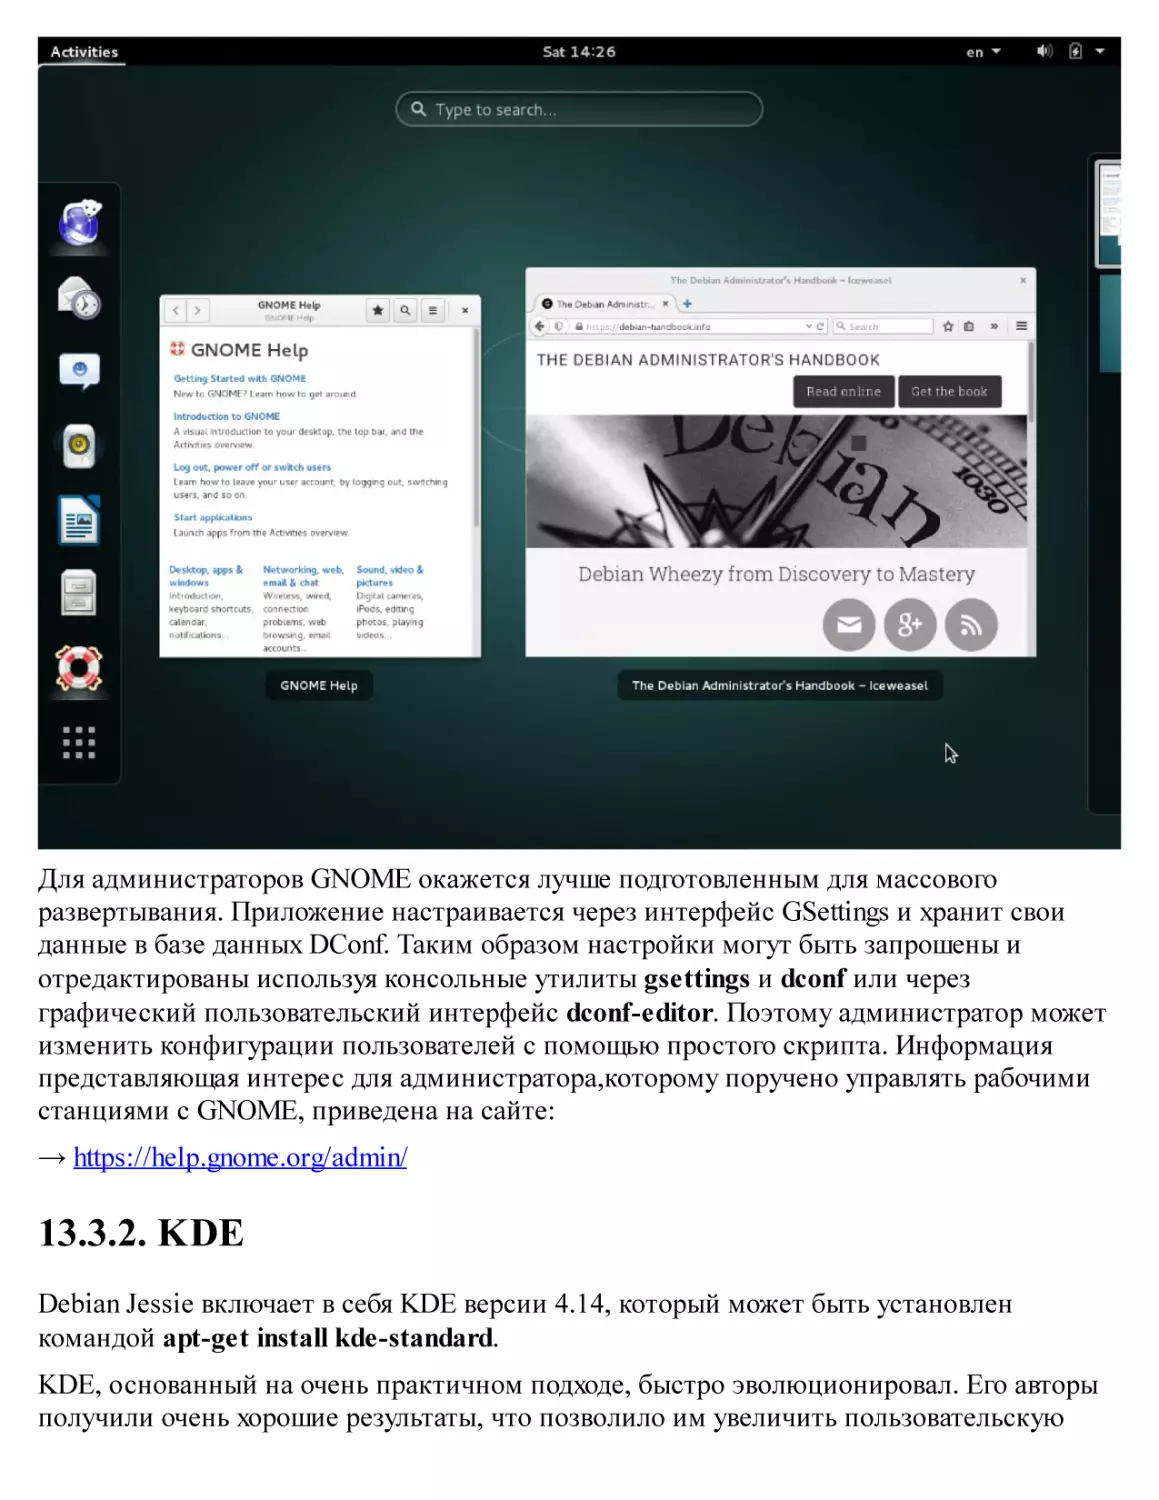 13.3.2. KDE